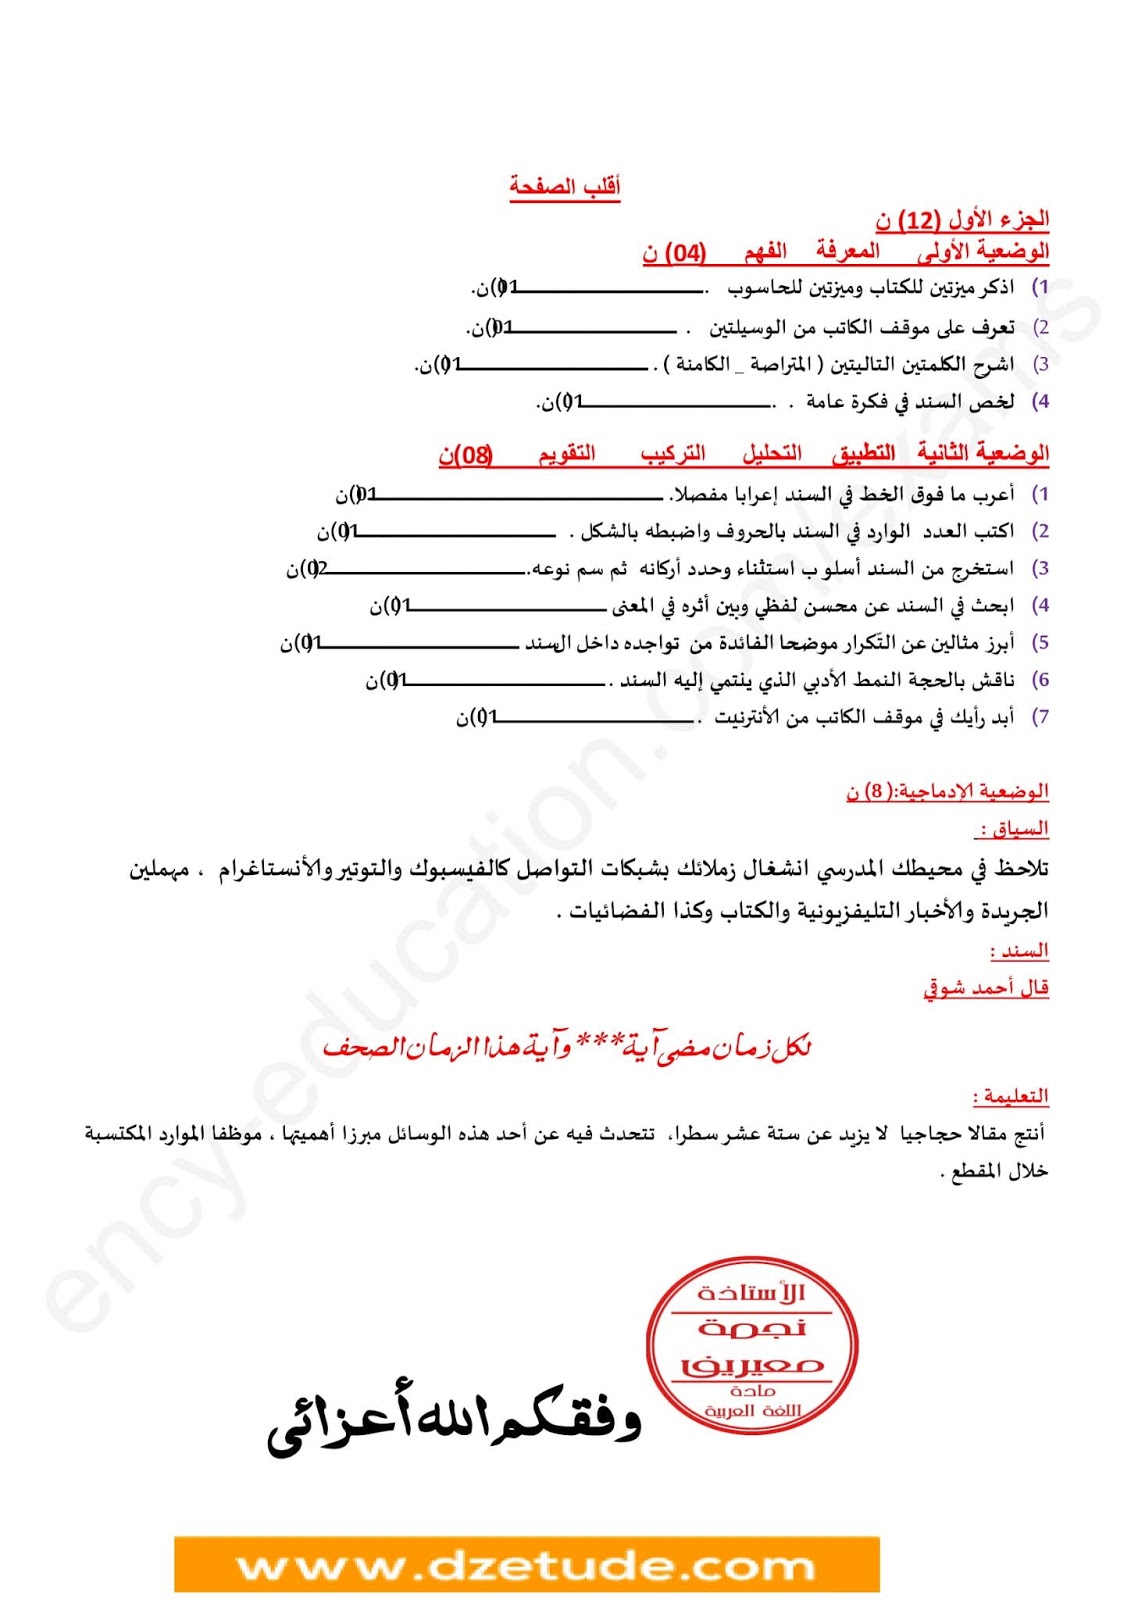 فرض الفصل الأول في اللغة العربية للسنة الرابعة متوسط - الجيل الثاني نموذج 9